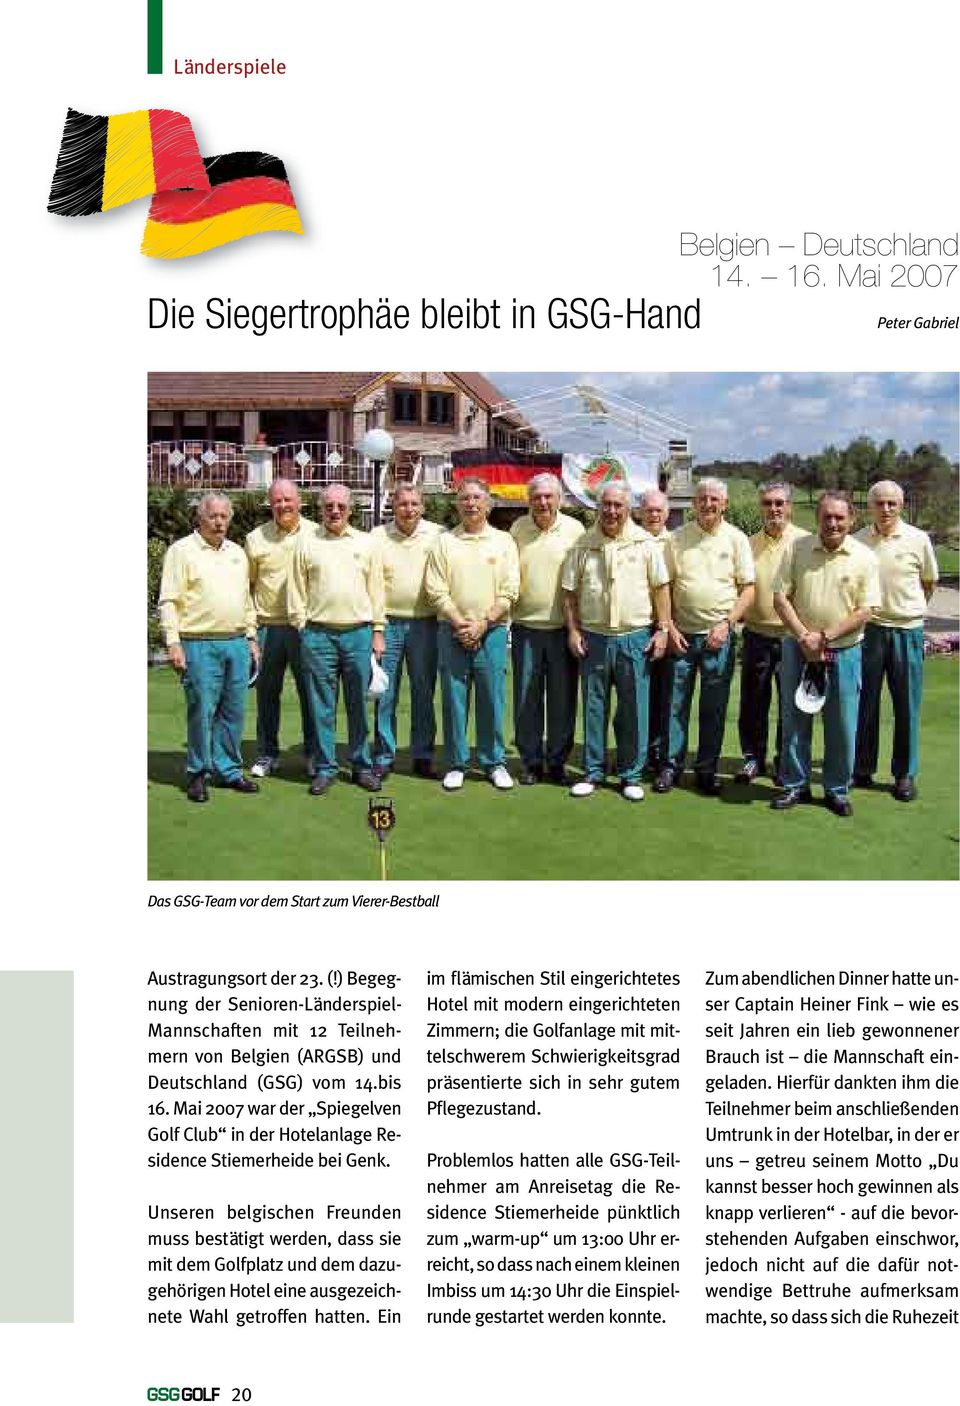 Mai 2007 war der Spiegelven Golf Club in der Hotelanlage Residence Stiemerheide bei Genk.